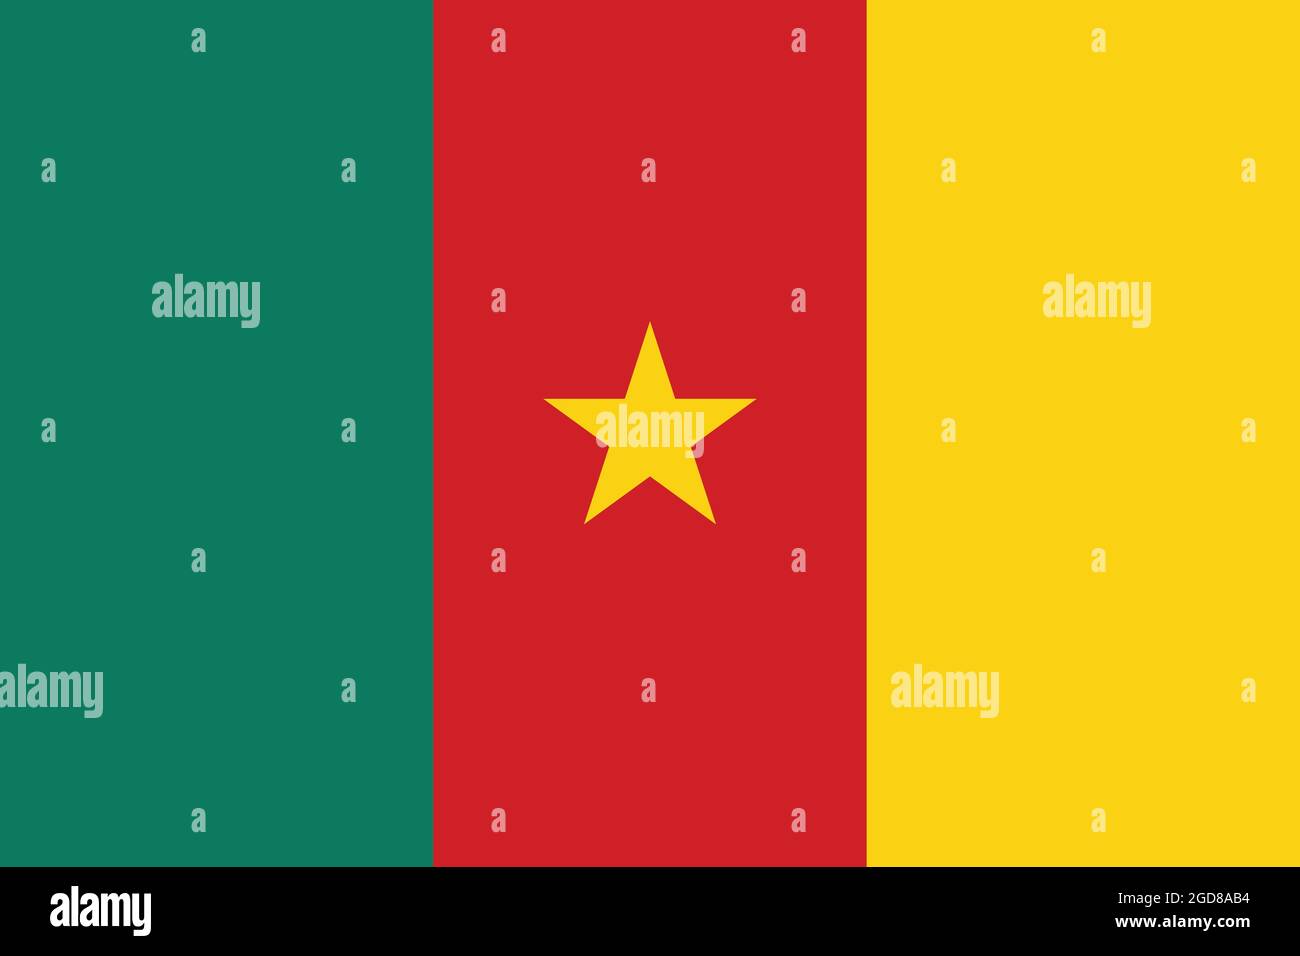 Nationalflagge von Kamerun Originalgröße und Farben Vektordarstellung, kamerunische Flagge oder Drapeau du Cameroun haben den Stern der Einheit, Panafrikanisch Stock Vektor